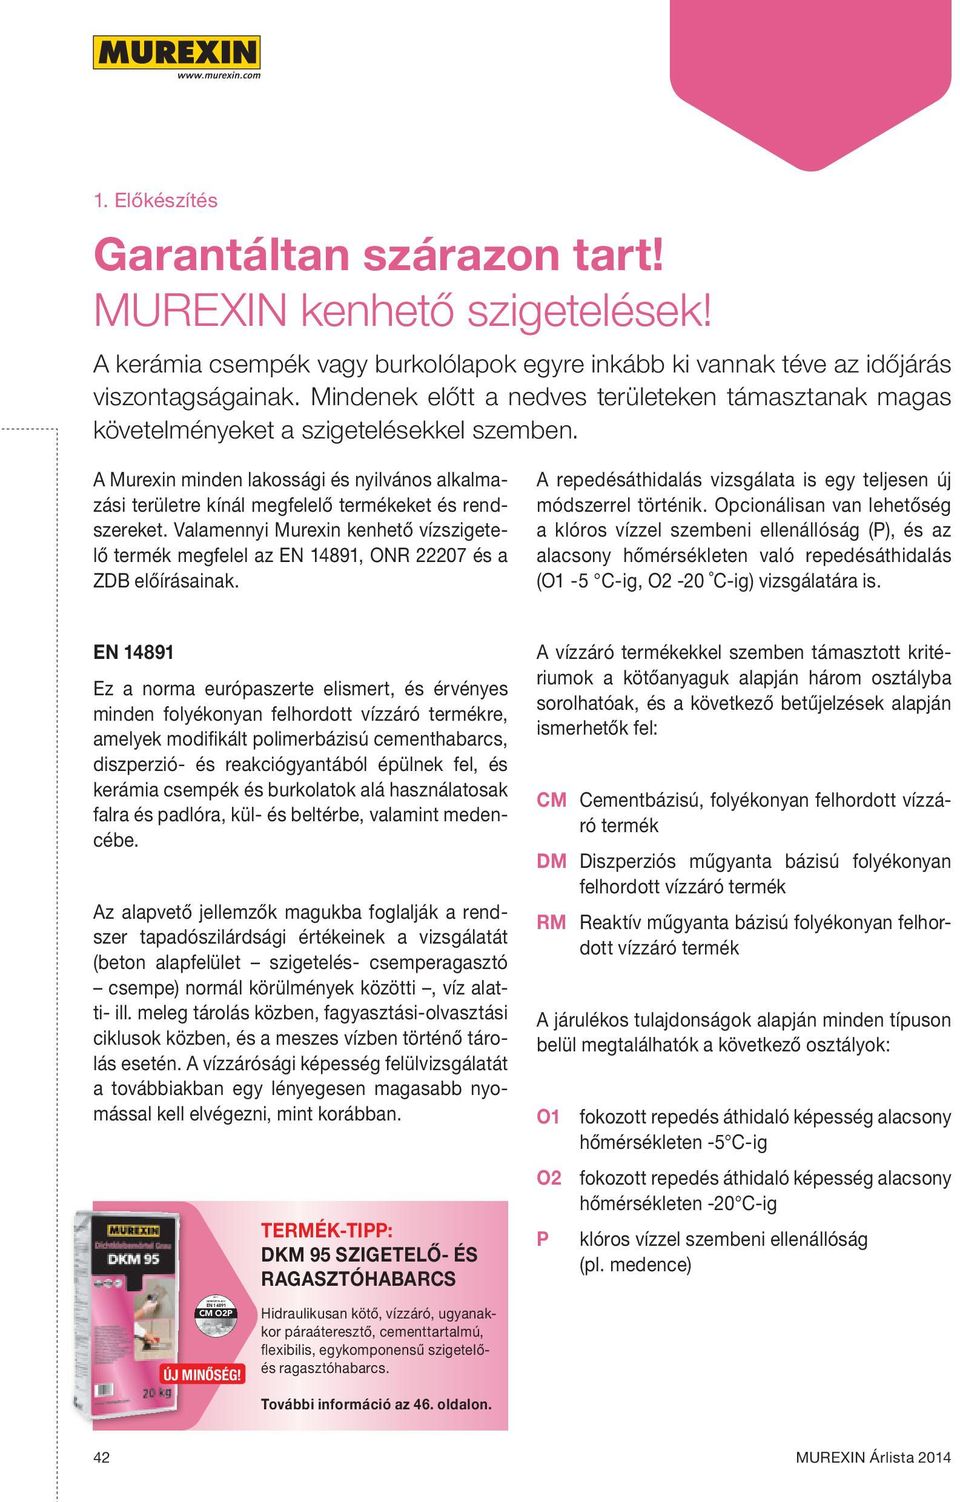 A Murexin minden lakossági és nyilvános alkalmazási területre kínál megfelelő termékeket és rendszereket.